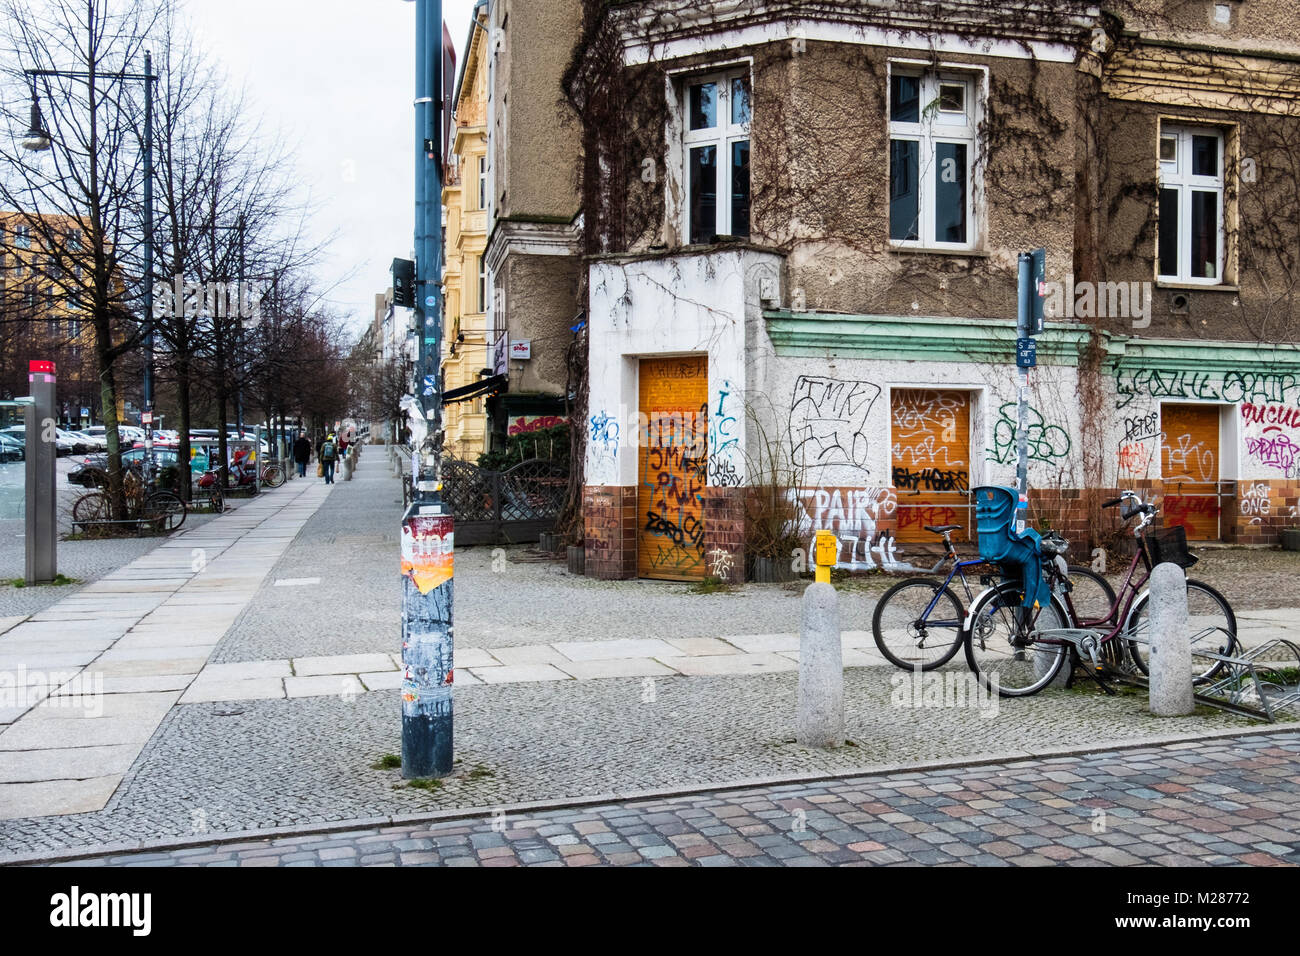 Berlino, Prenzlauerberg, coperto di graffiti-imbarcato fino vecchio ristorante nel vecchio edificio in Schönhauser Allee.In attesa di gentrification da nuovi proprietari Foto Stock